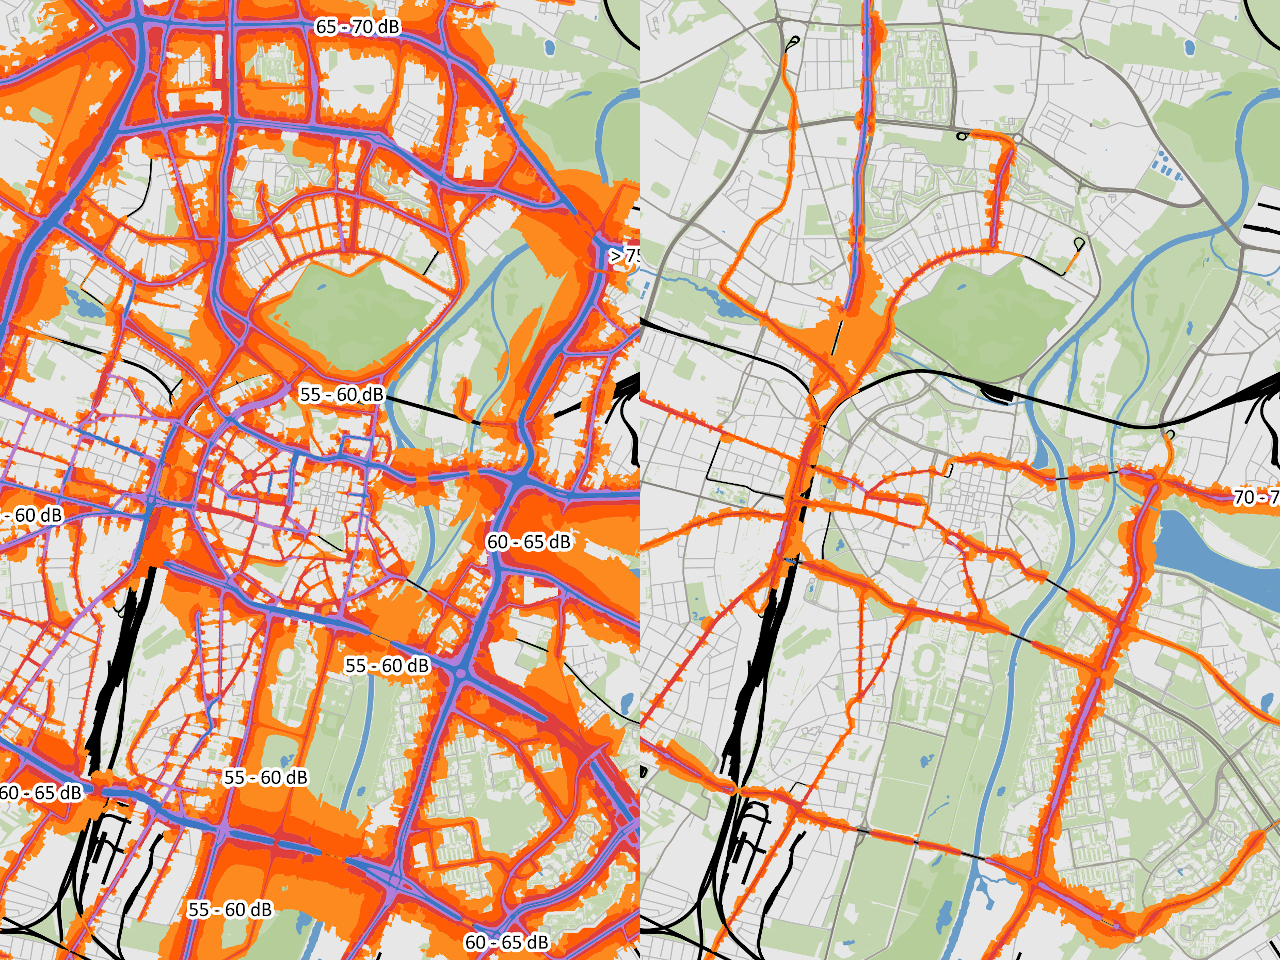 Imisja hałasu drogowego (z lewej) i tramwajowego (z prawej) w Poznaniu w 2017 roku. Źródło: Geopoz, OpenStreetMap